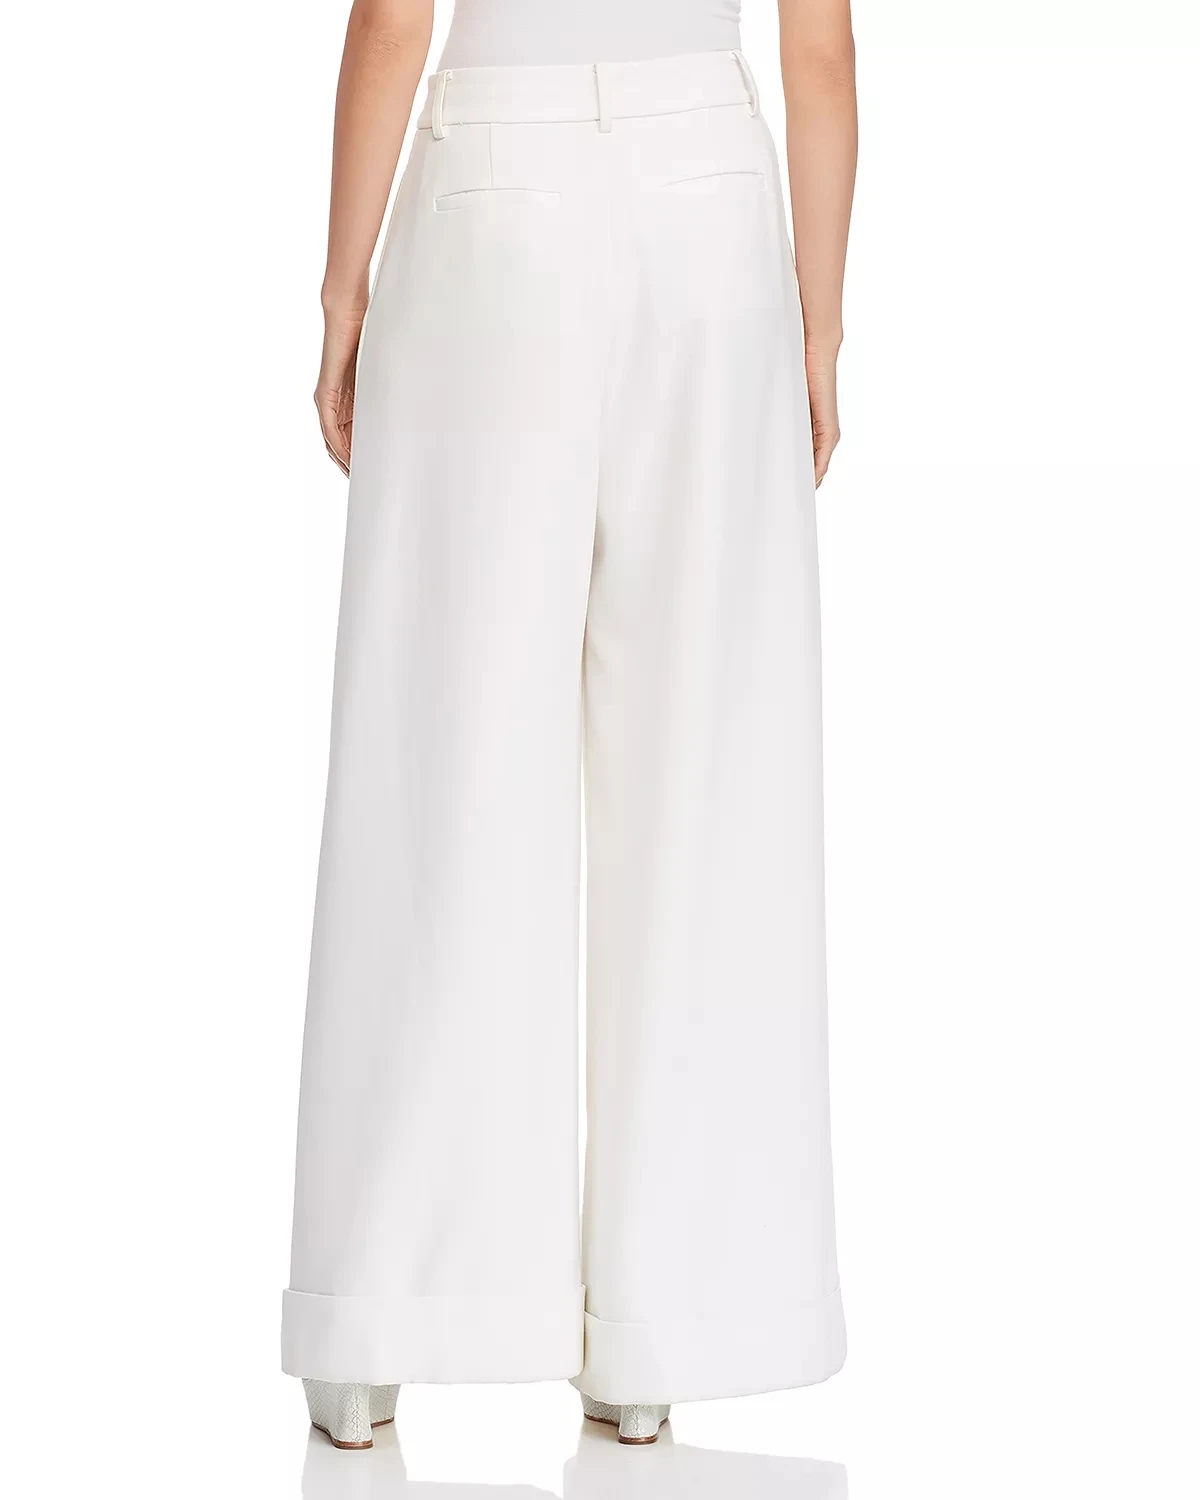 New Fashion Ladies Linen Loose Fit Wide Leg Pants For Women White Suit ...